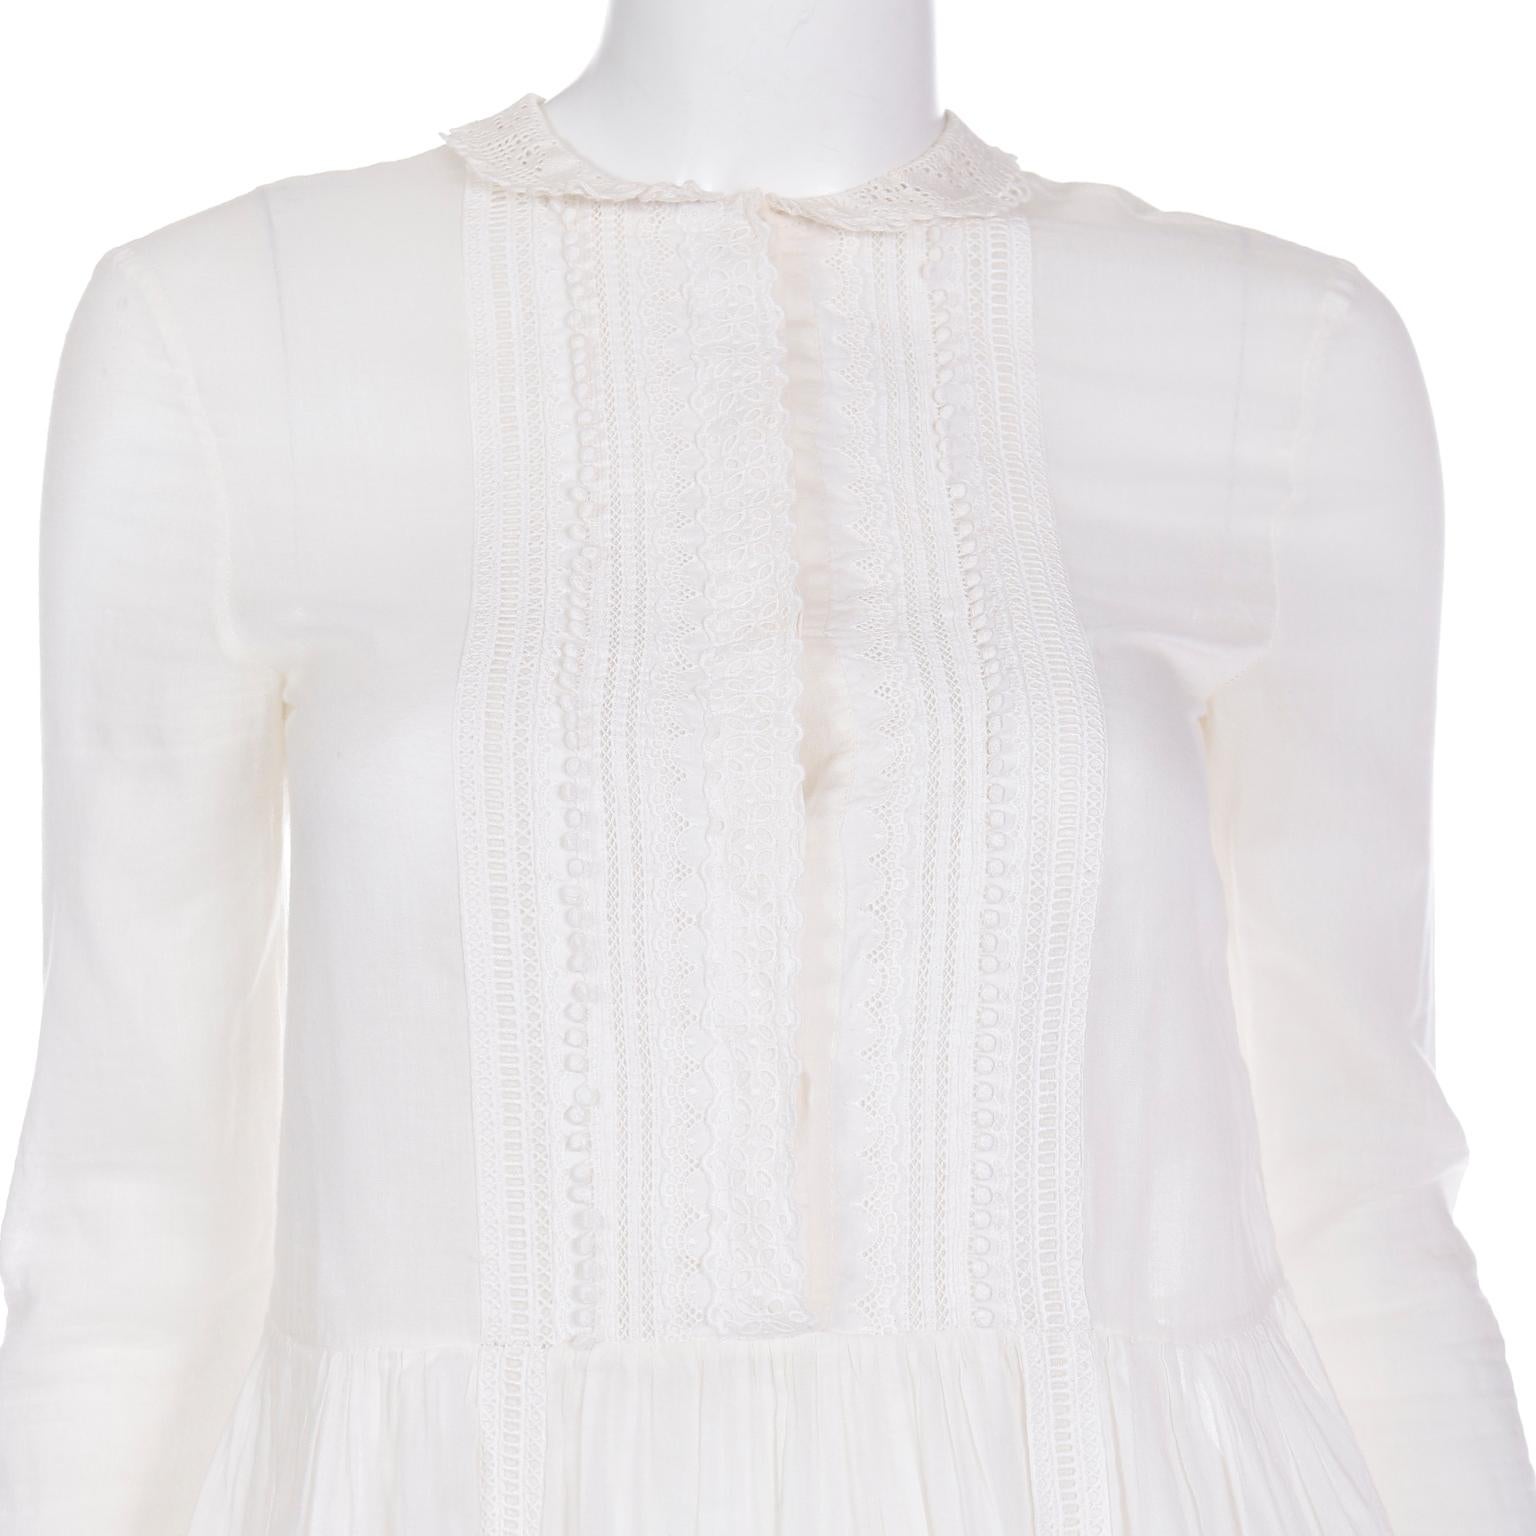 Saint Laurent Paris White Cotton Voile Babydoll Blouse Top w Fine Lace Trim For Sale 2